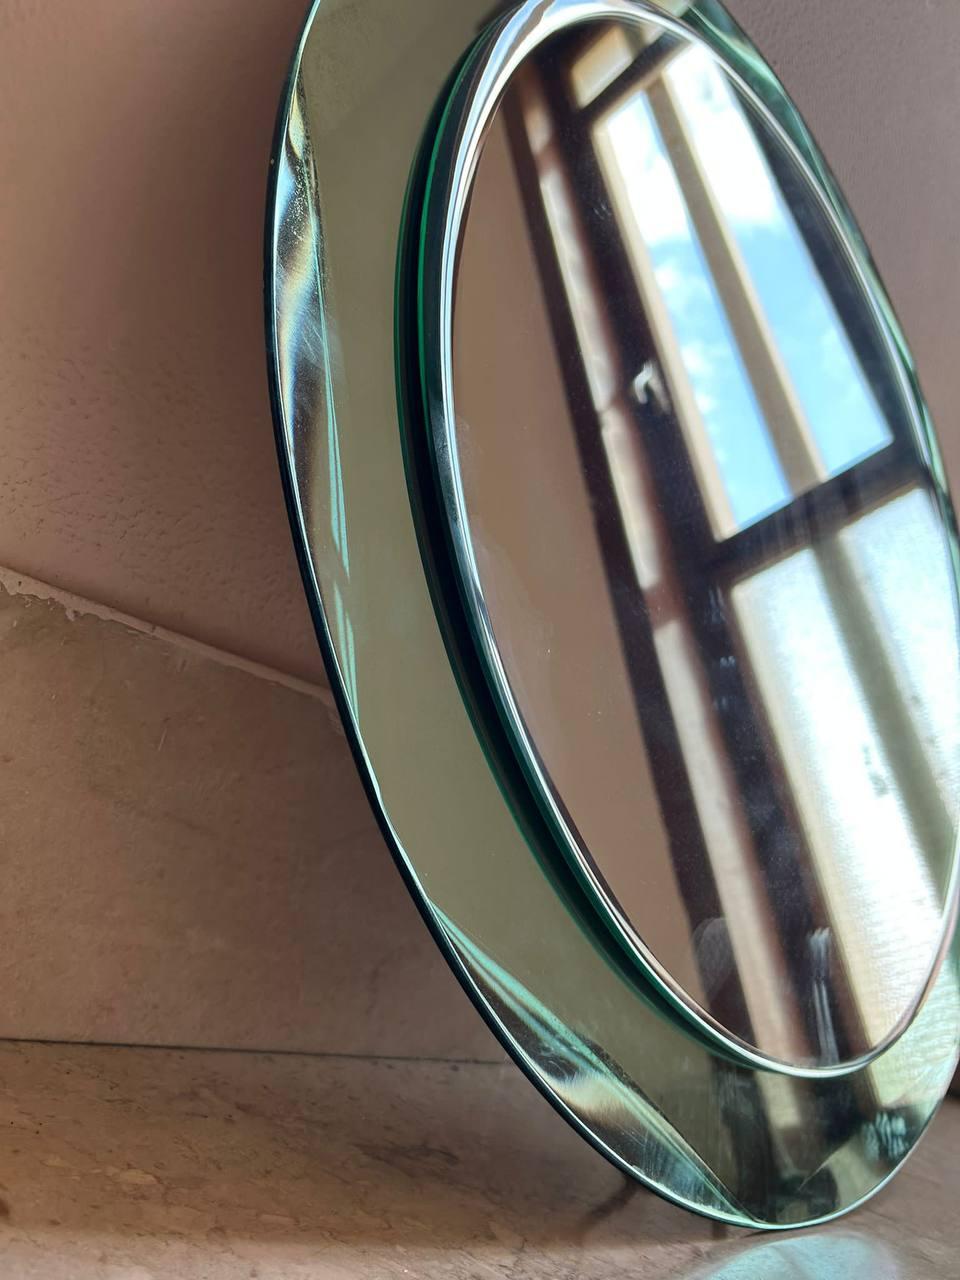 Magnifique miroir ovale du milieu du siècle avec cadre sarcelle. Ce miroir italien de style Cristal Arte a été conçu en Italie dans les années 1960.
Cette pièce est un exemple de l'excellence de l'artisanat italien avec une double couche de